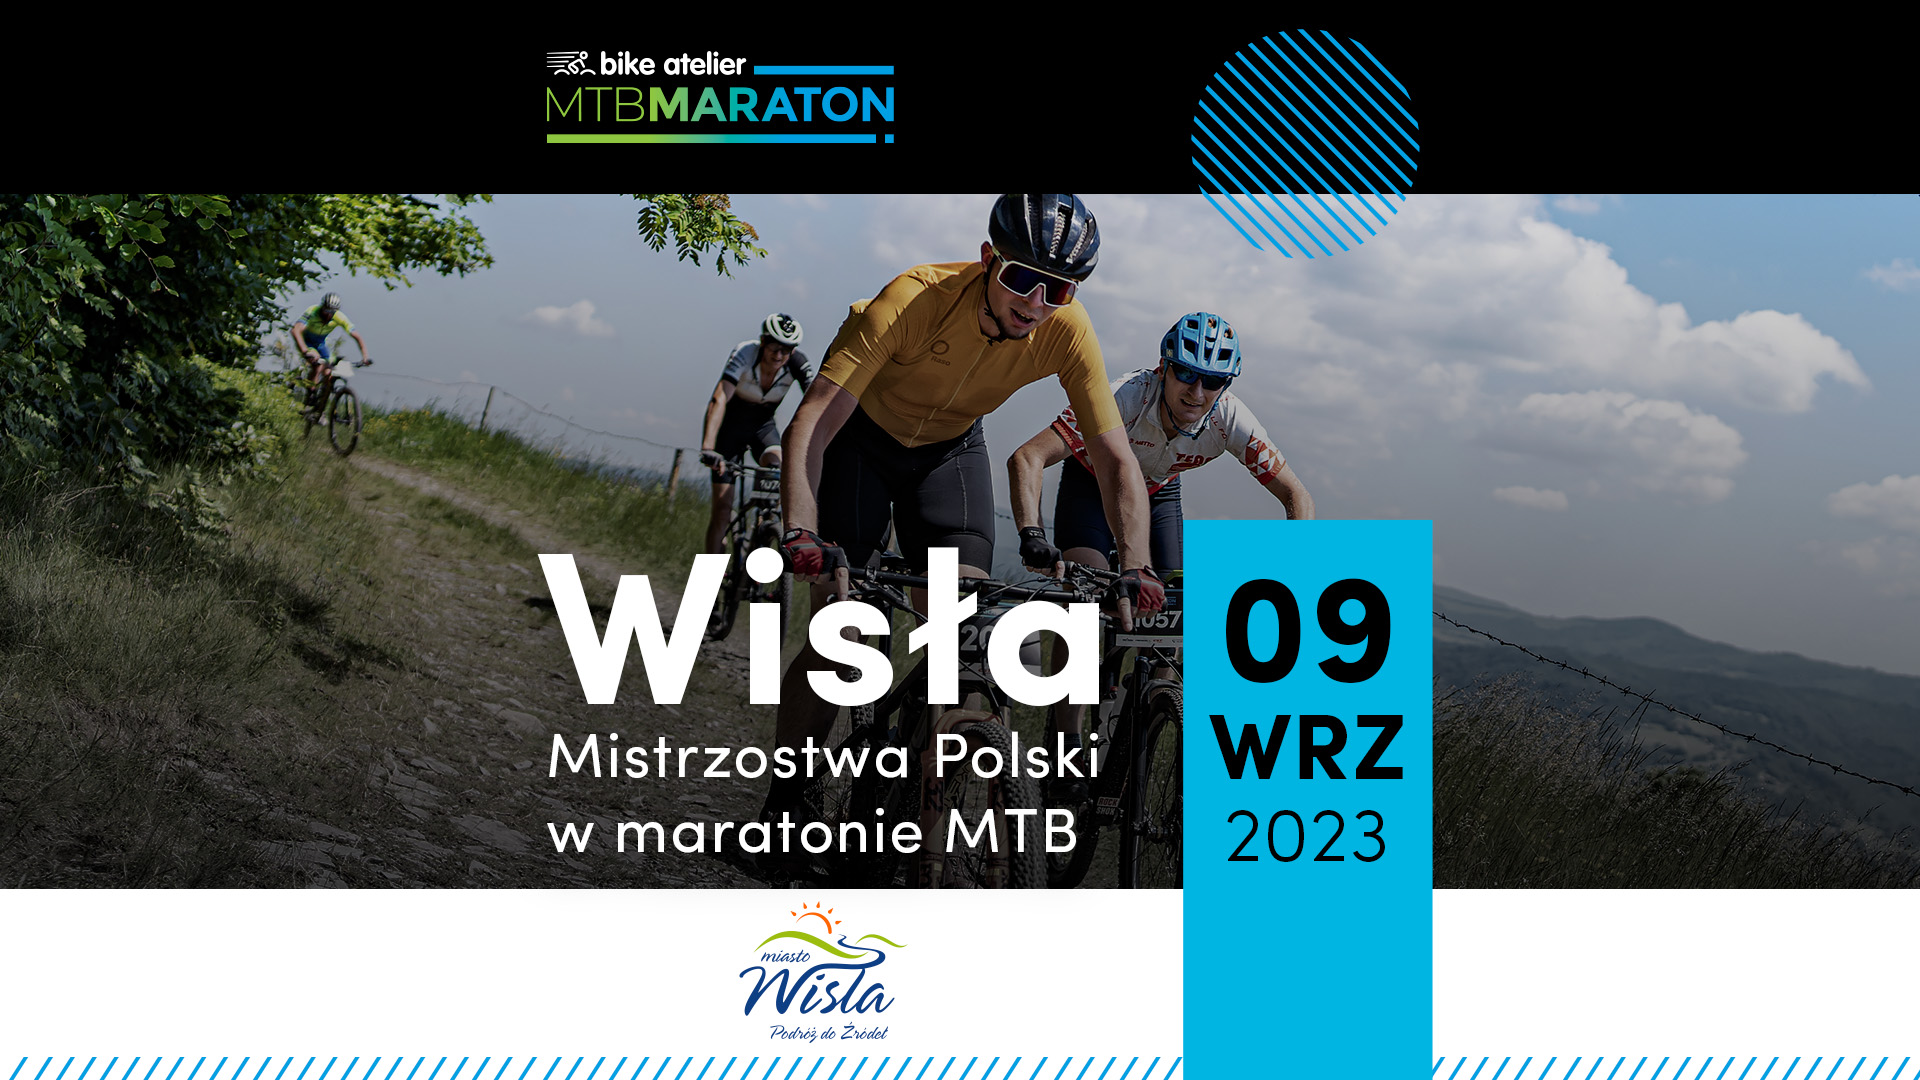 Mistrzostwa Polski w maratonie MTB już 9 września | Bike Atelier MTB Maraton, Wisła | ZAPOWIEDŹ